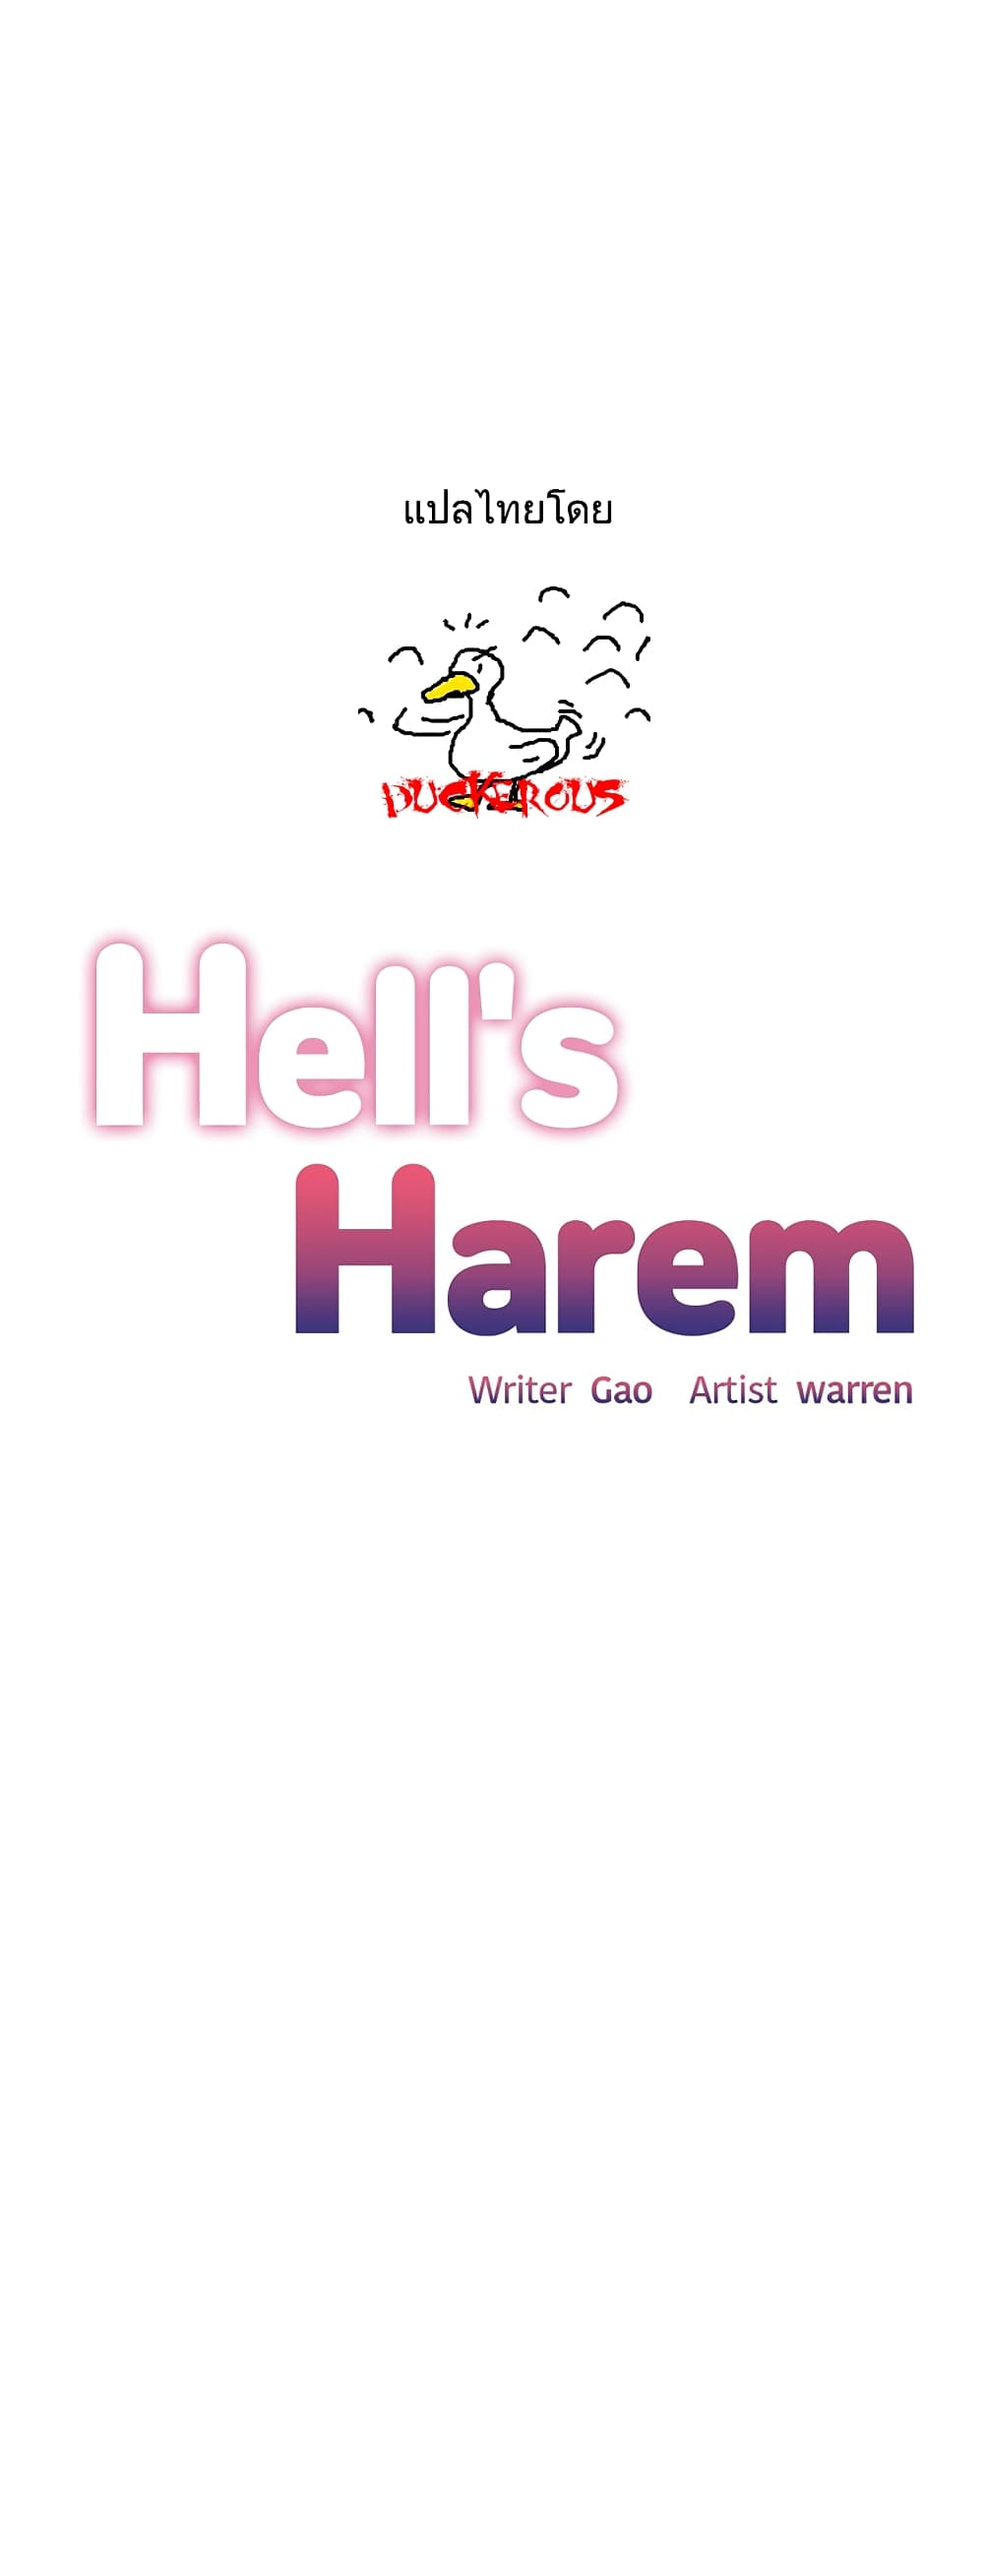 Hell's Harem 40 (1)